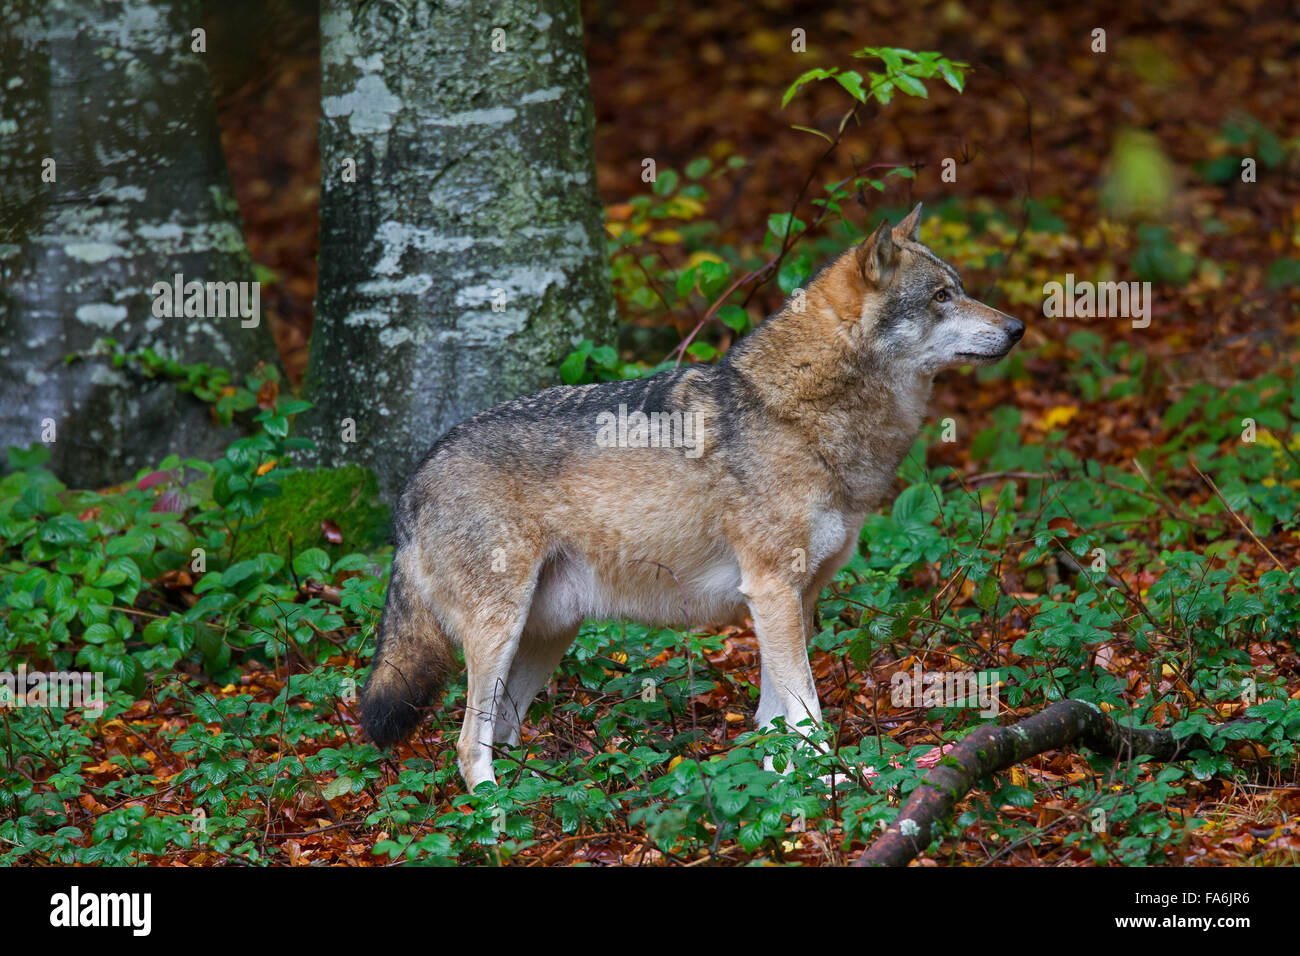 Ben nutrito Unione lupo (Canis lupus) con grasso ventre nella foresta di autunno Foto Stock